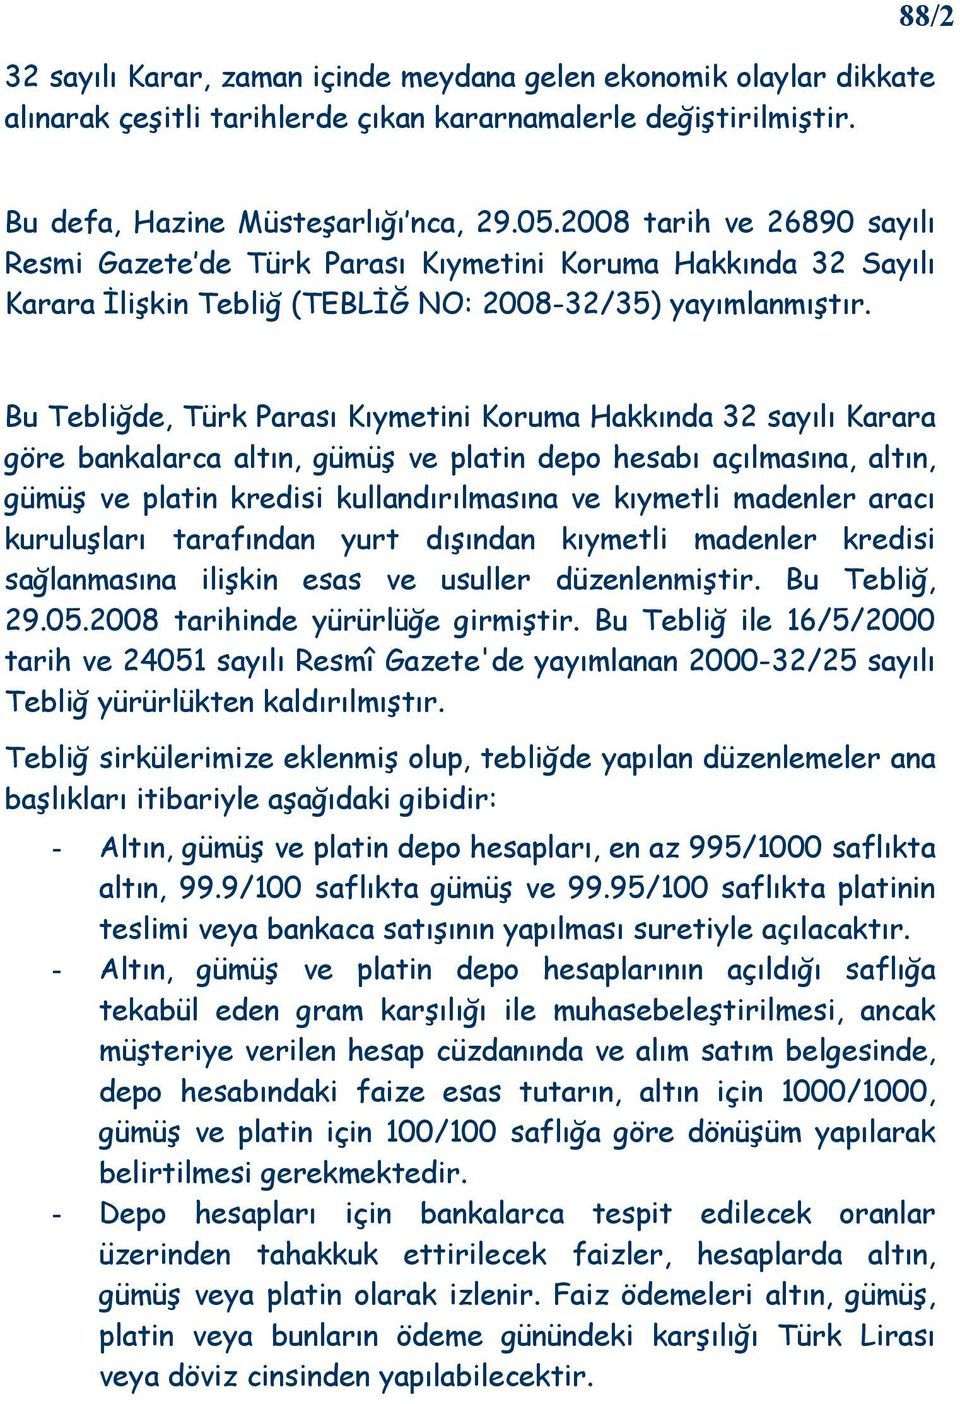 Bu Tebliğde, Türk Parası Kıymetini Koruma Hakkında 32 sayılı Karara göre bankalarca altın, gümüş ve platin depo hesabı açılmasına, altın, gümüş ve platin kredisi kullandırılmasına ve kıymetli